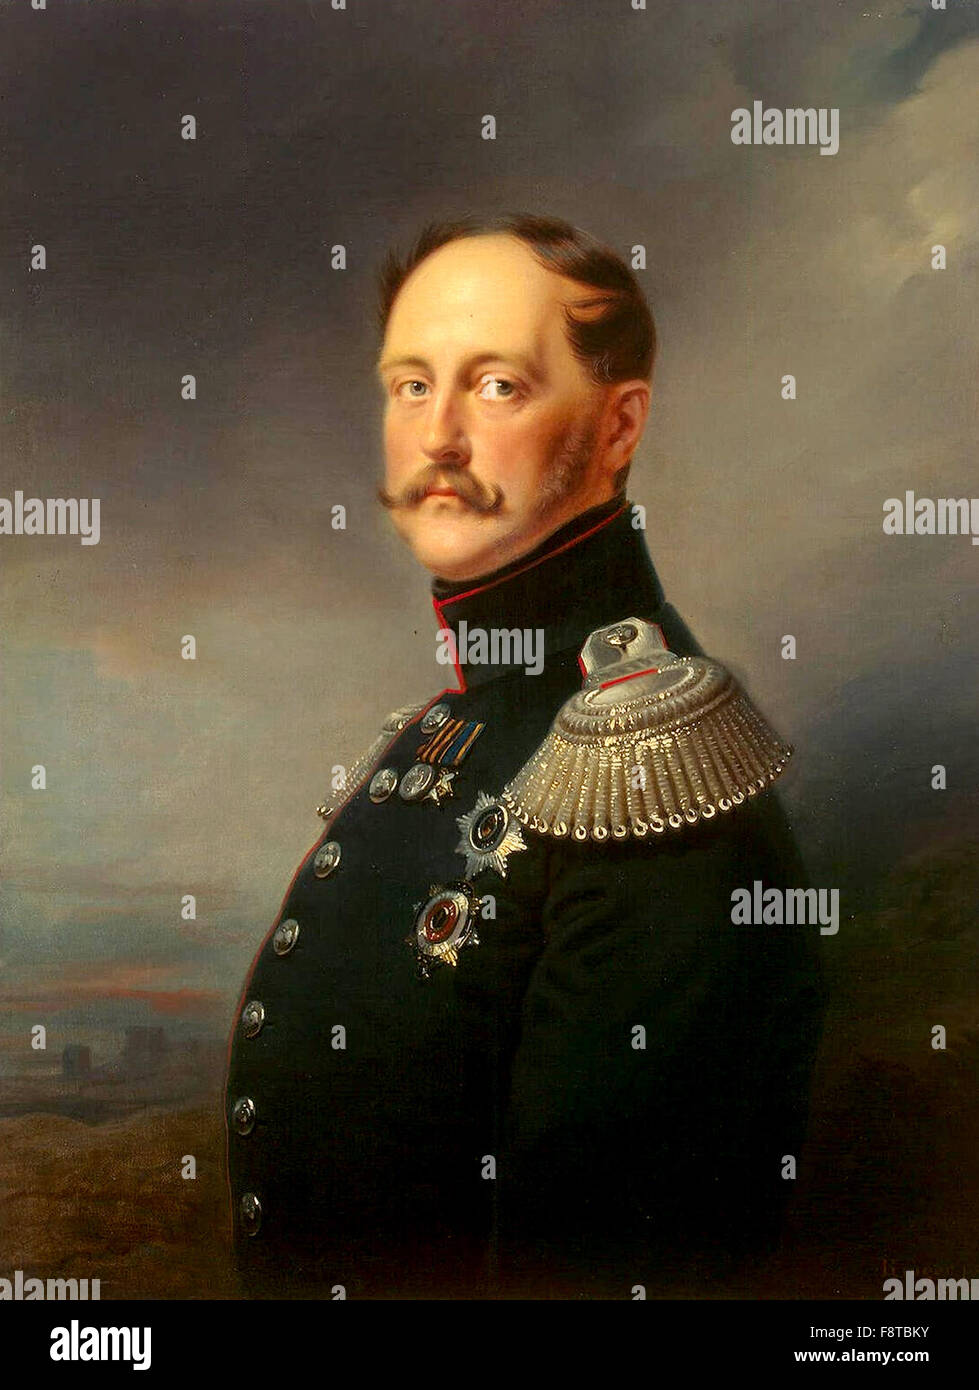 L'Empereur Nicolas Ier, empereur de Russie de 1825 à 1855 Banque D'Images